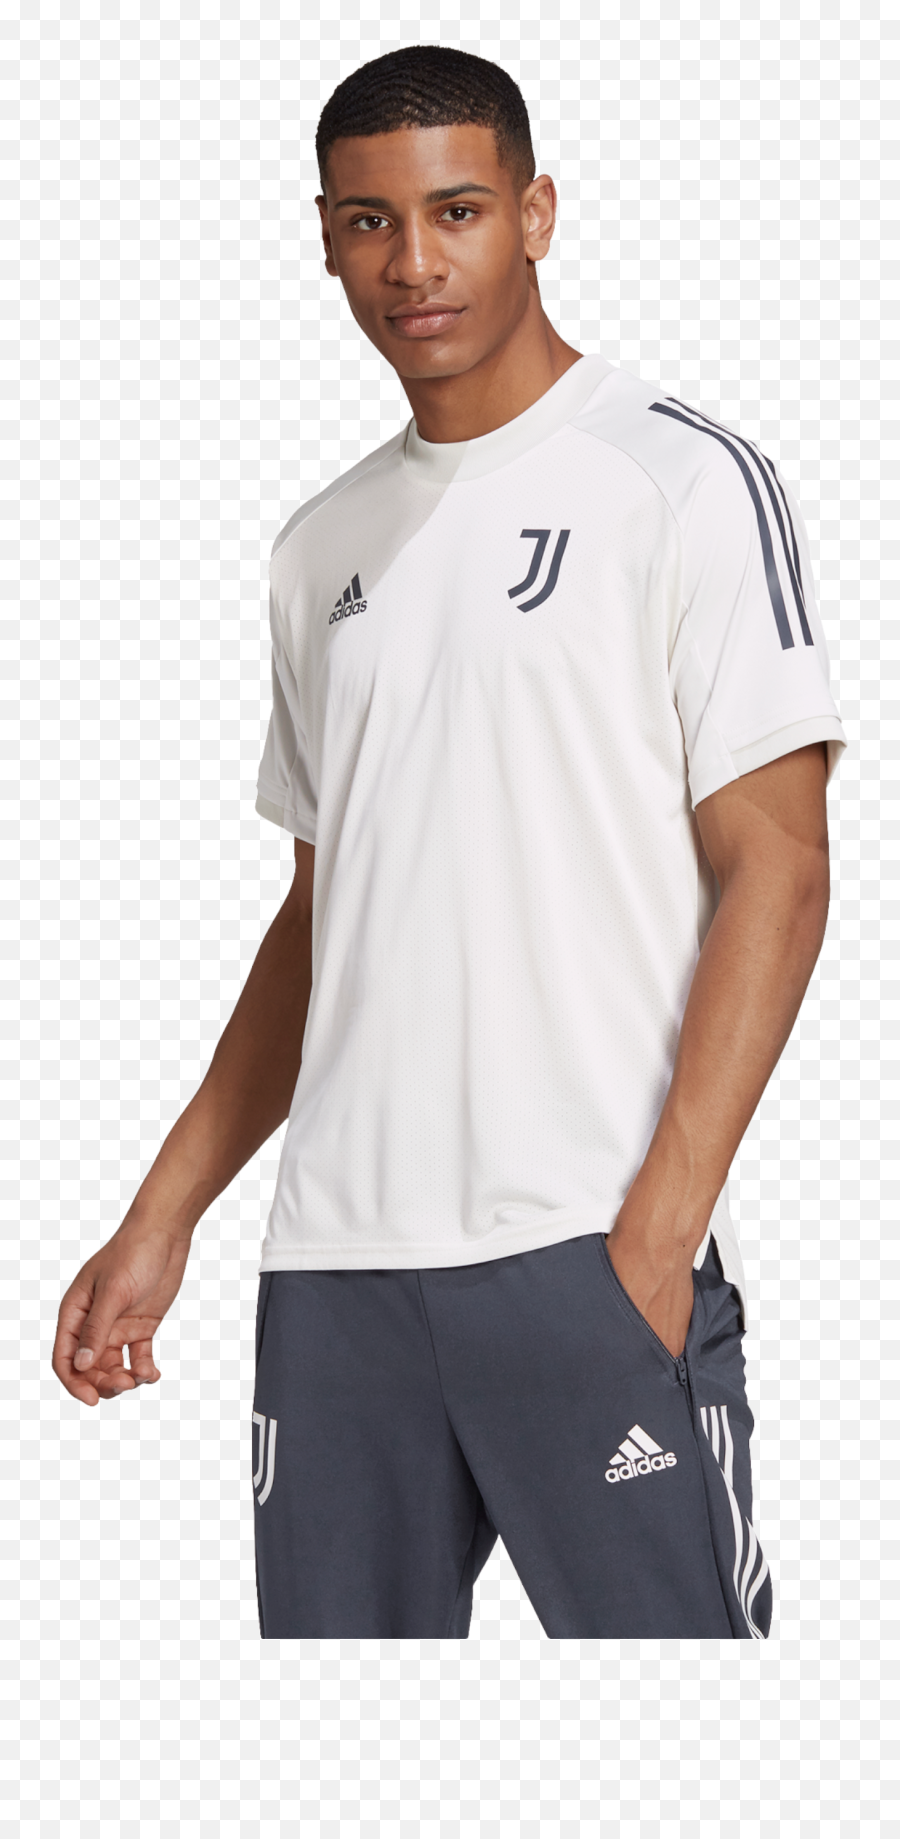 Buy Adidas T Shirt Juventus Cheap Online Emoji,Adidas Gold Logo Shirt